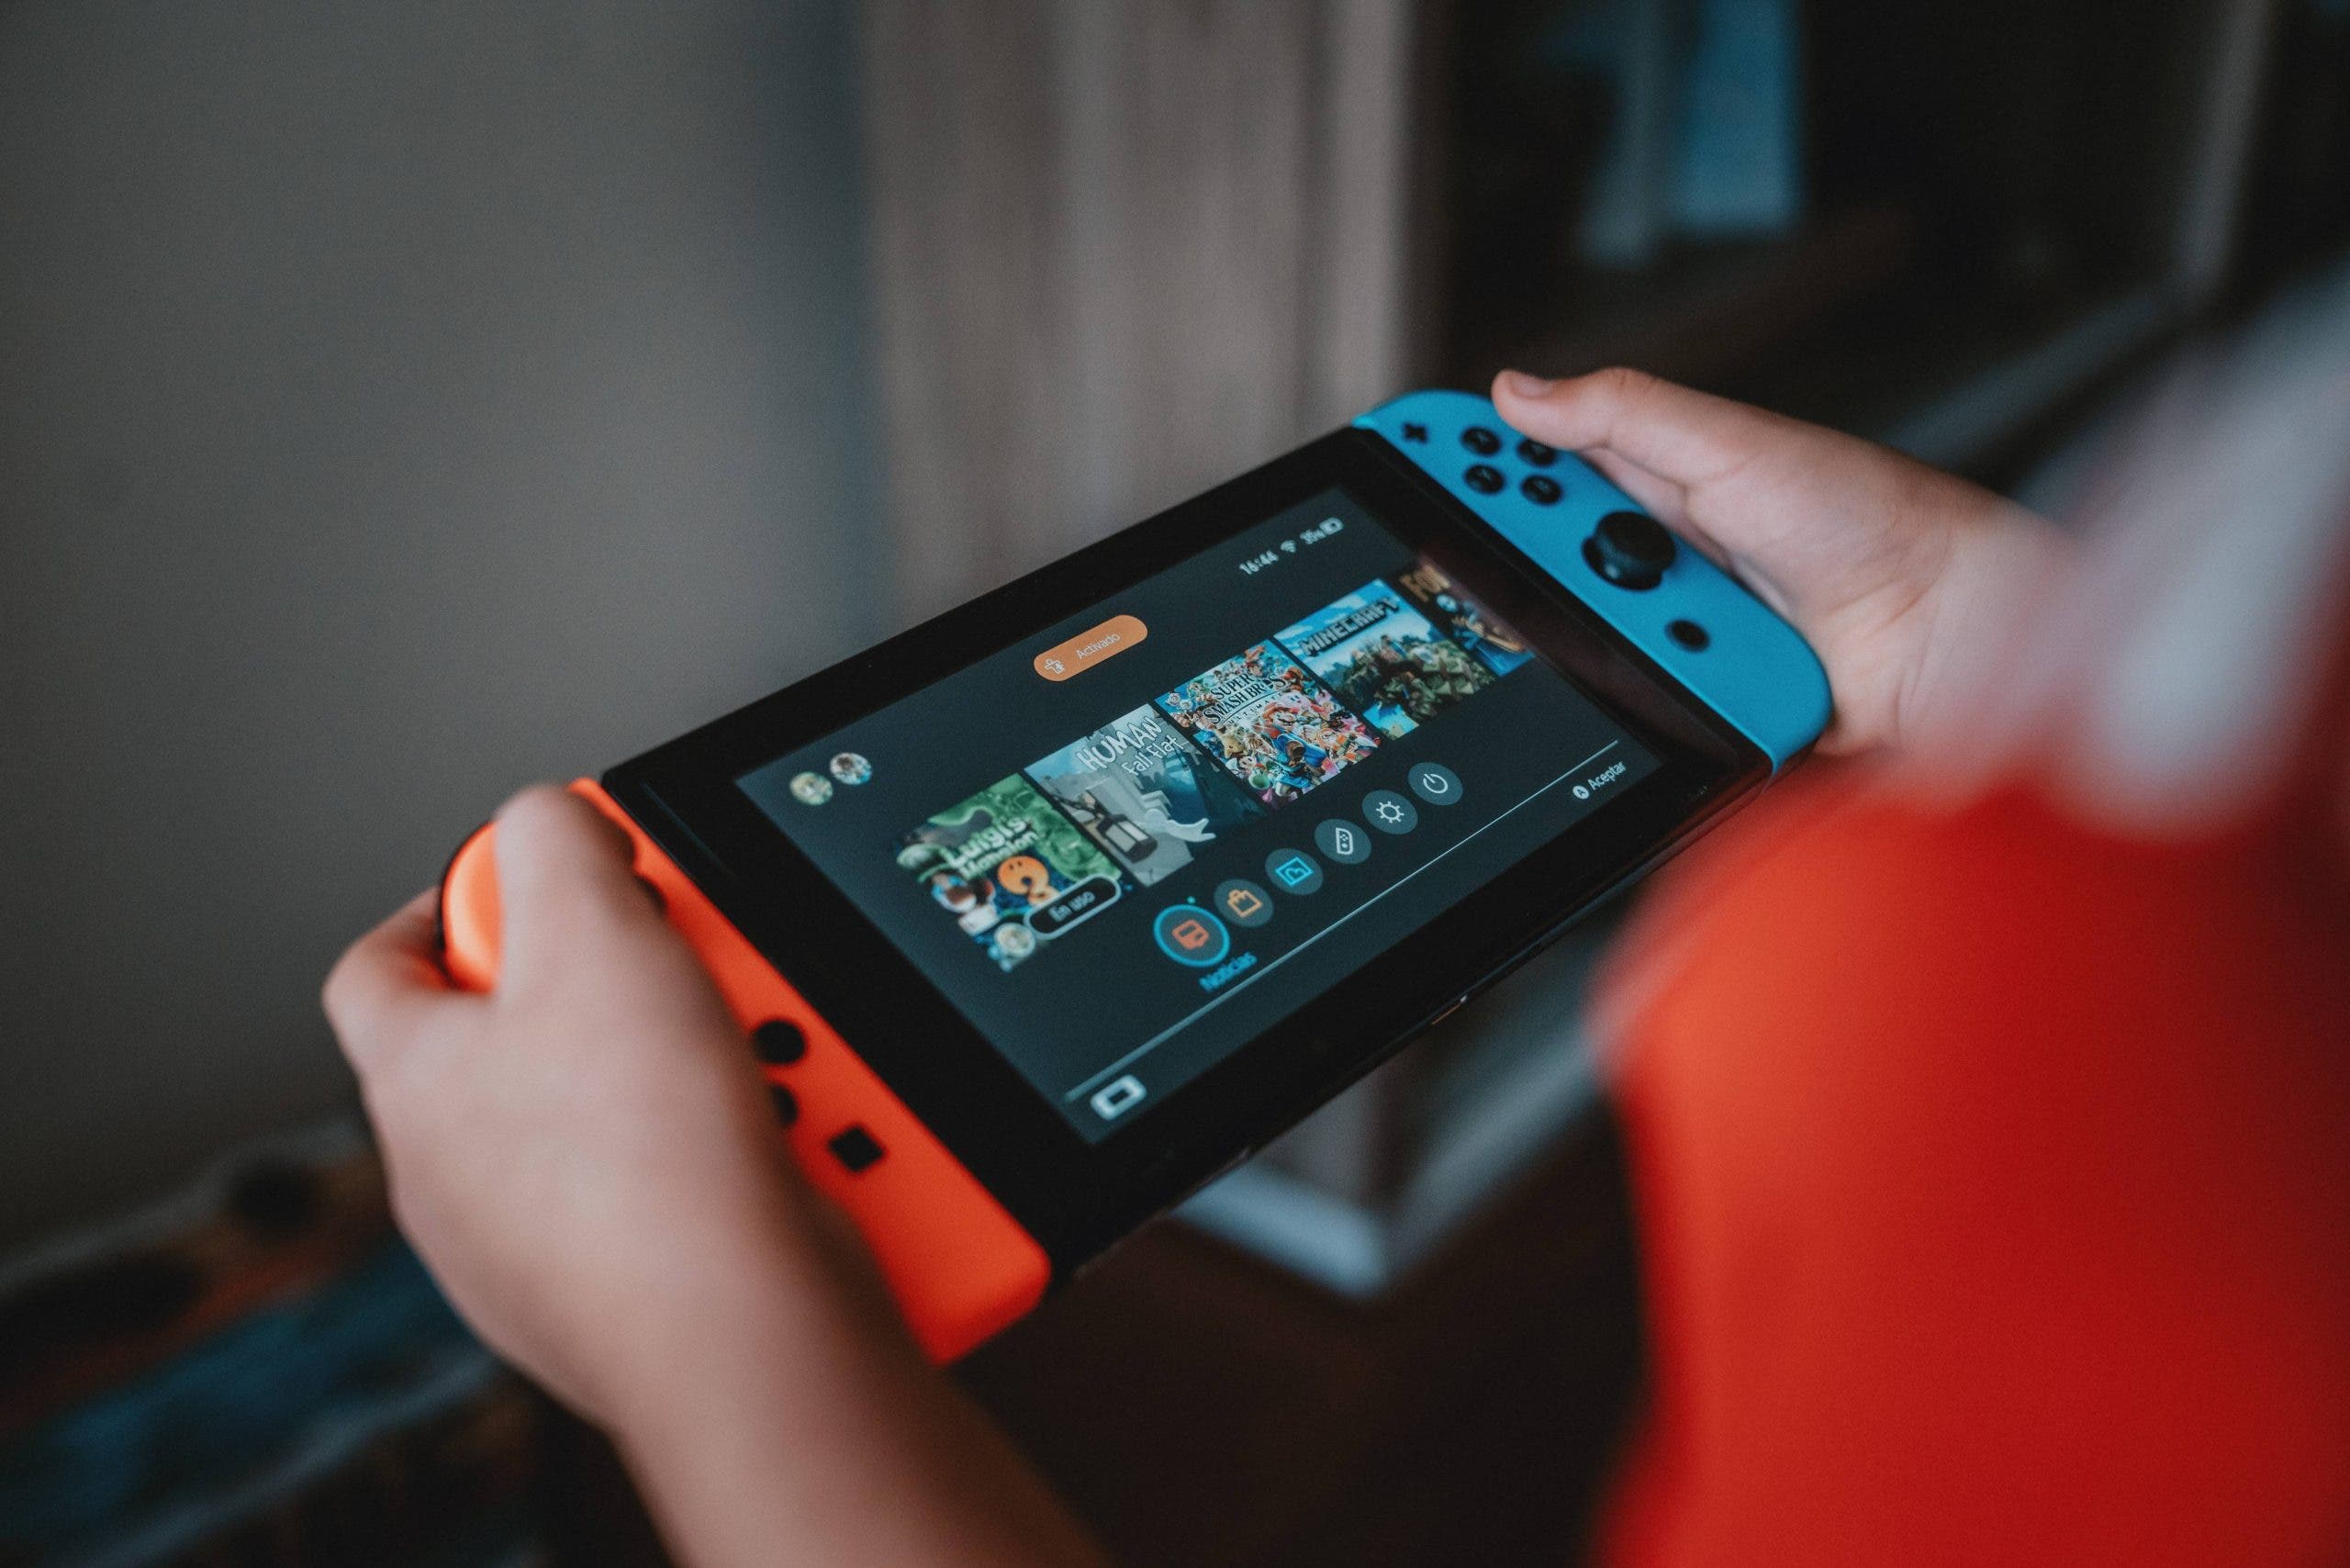 La empresa dueña del Nintendo Switch se encuentra trabajando para adaptar títulos provenientes del GameBoy y GameBoy Advance